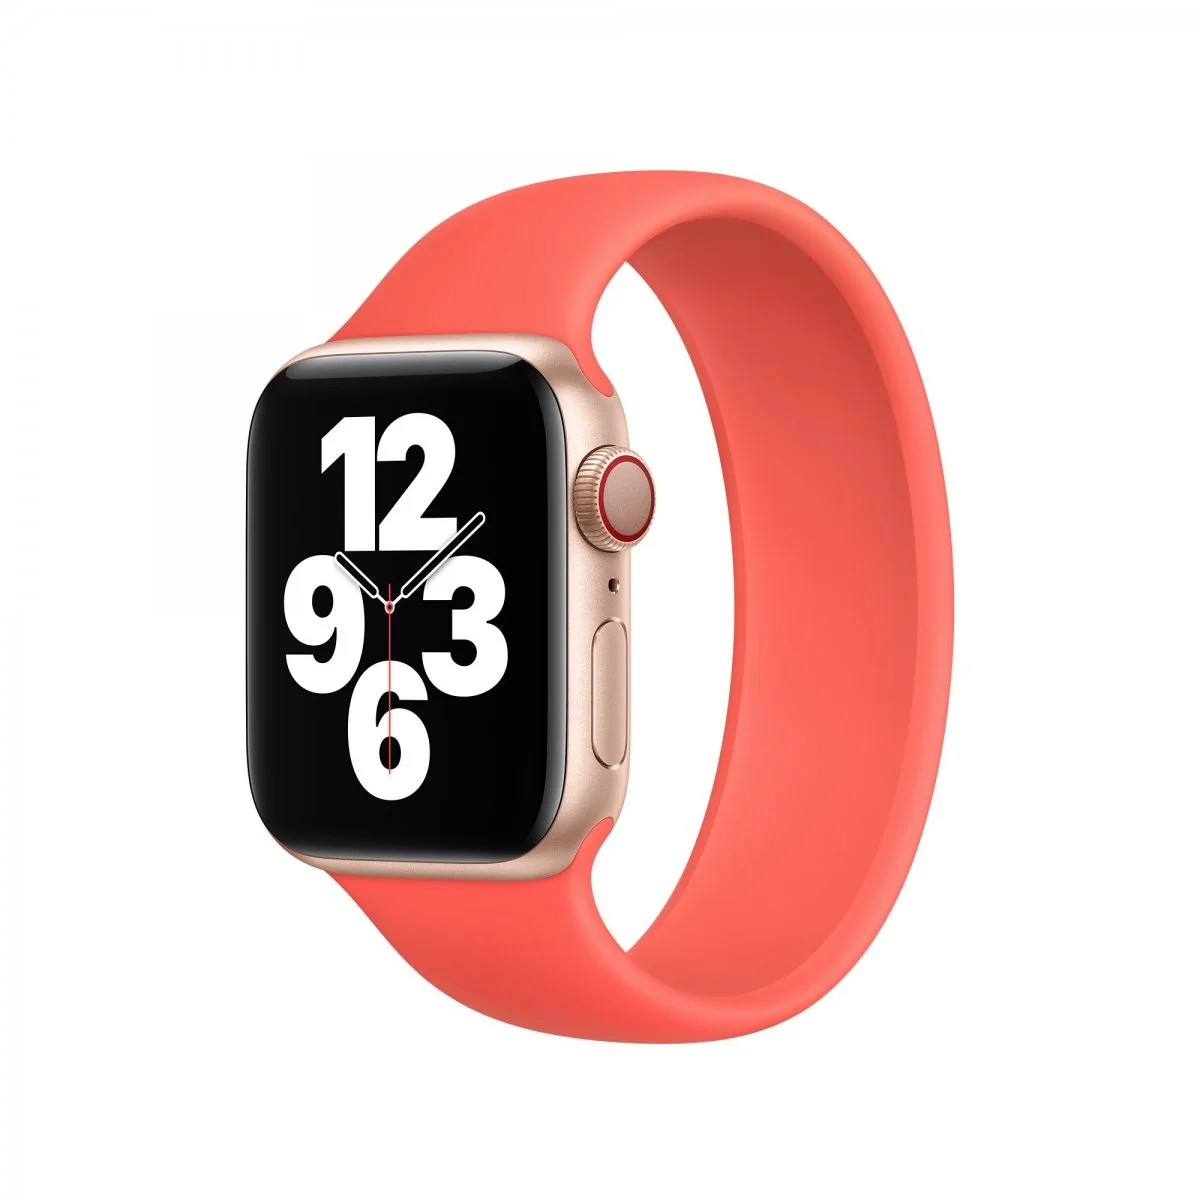 Řemínek iMore Solo Loop Apple Watch Series 1/2/3 42mm - Citrusově růžová (XS)